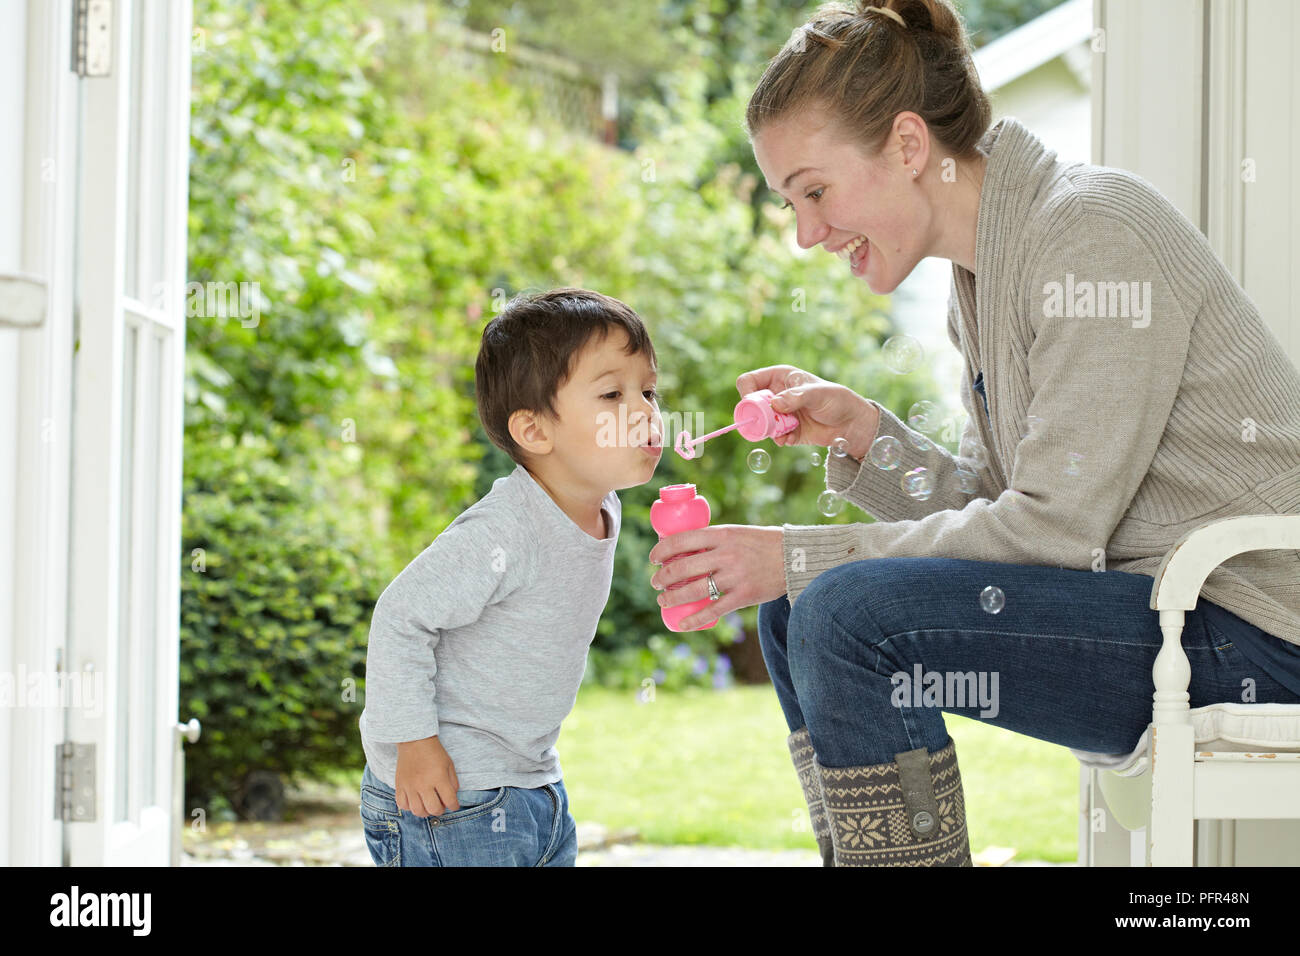 Petit boy blowing bubbles, woman holding bubble wand Banque D'Images